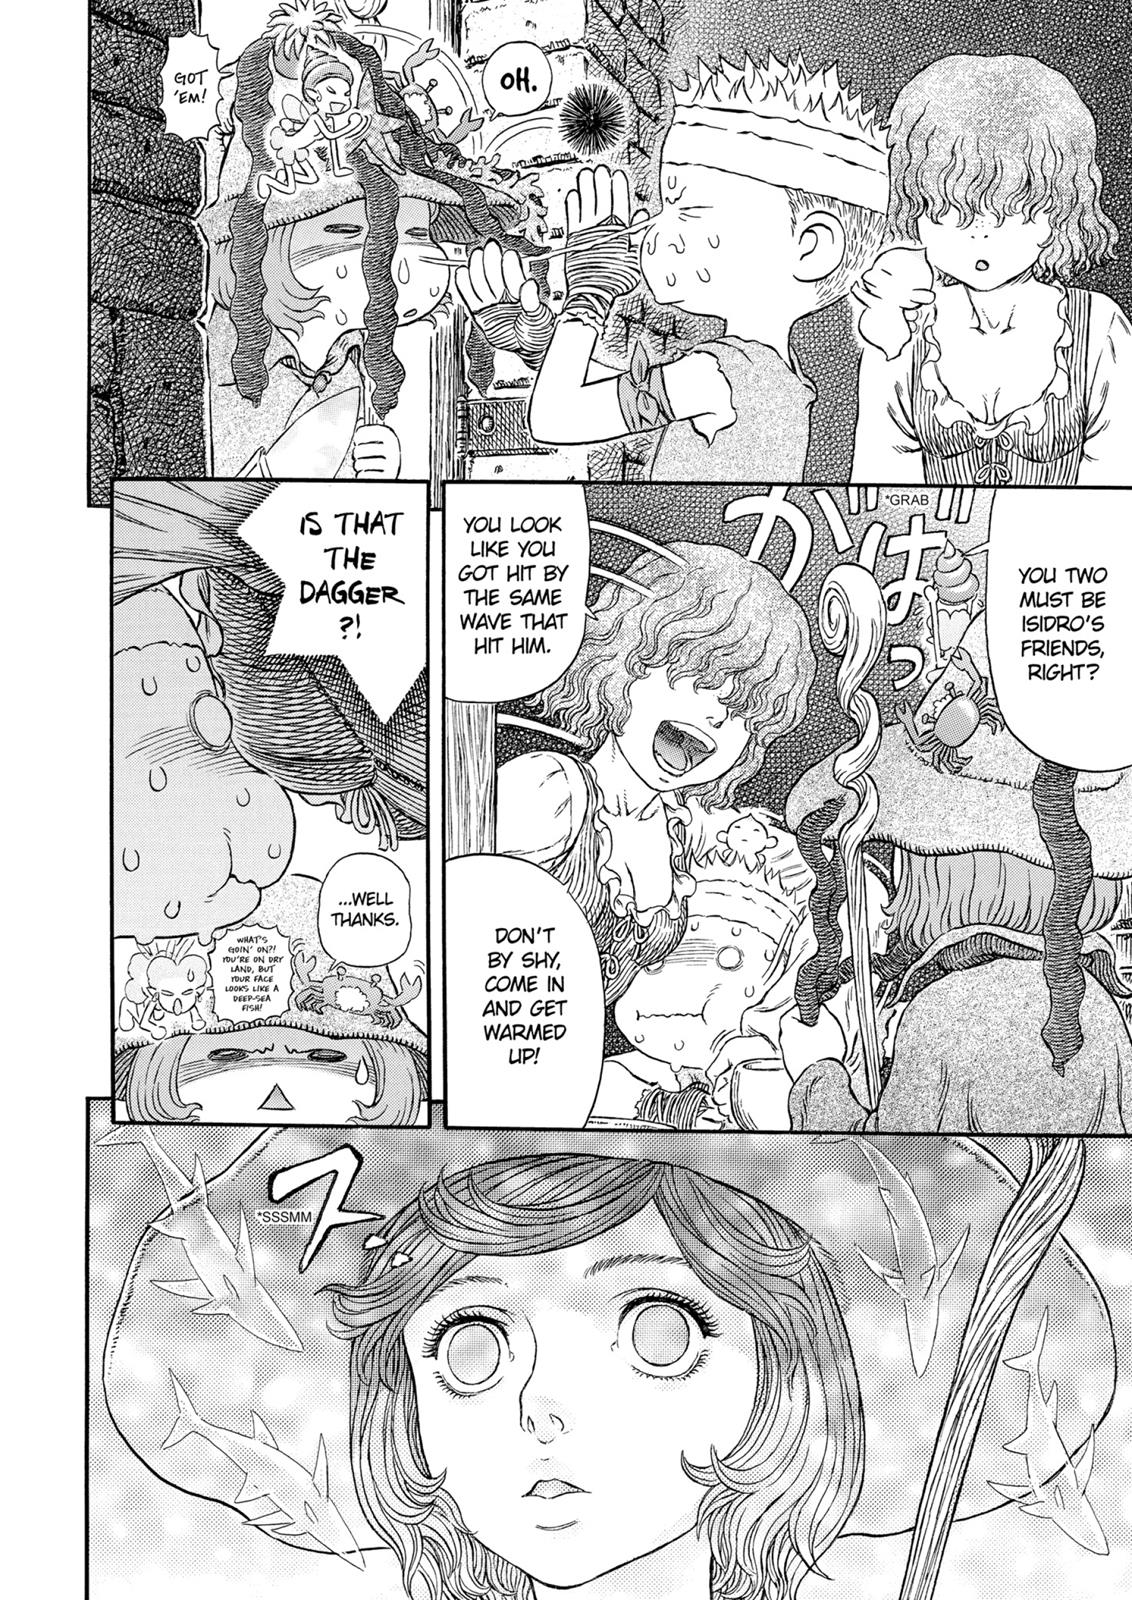 Berserk Manga Chapter 312 image 21